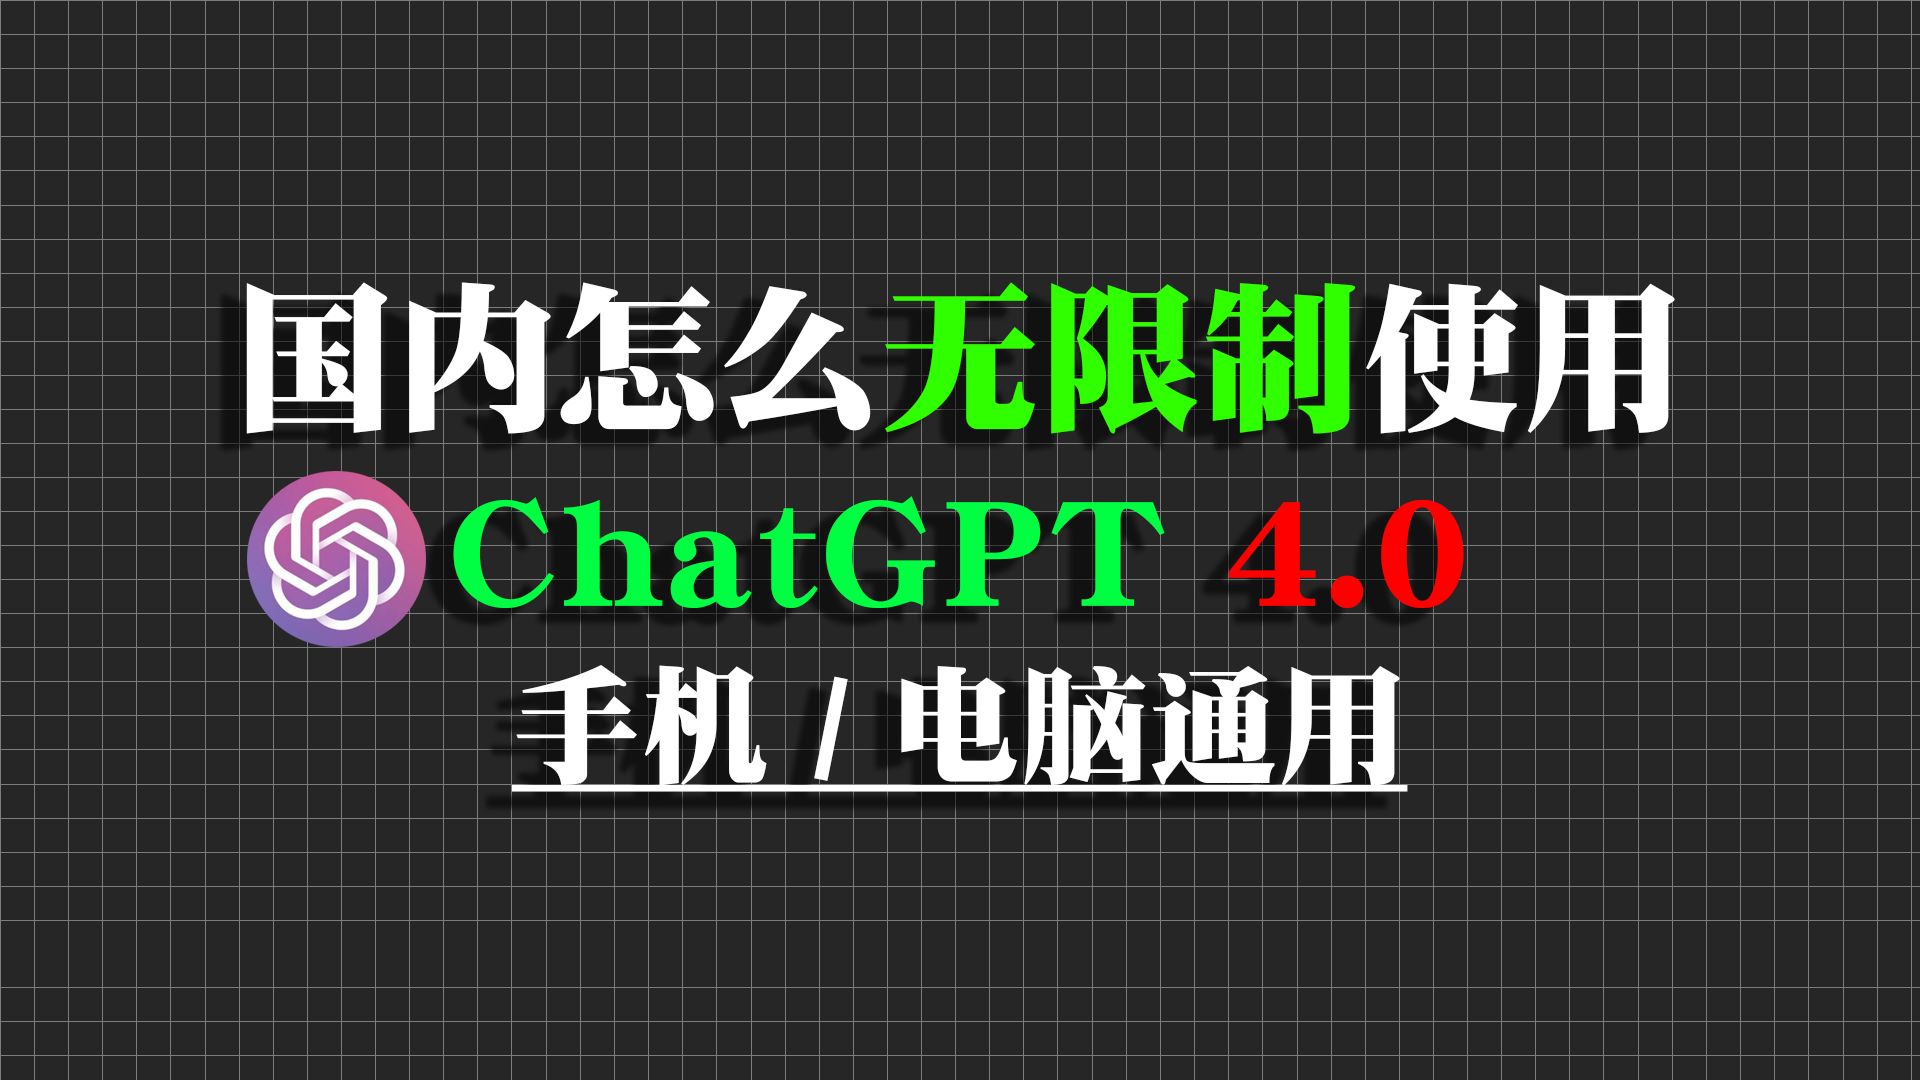 分享国内可免费无限制使用的ChatGPT4.0。